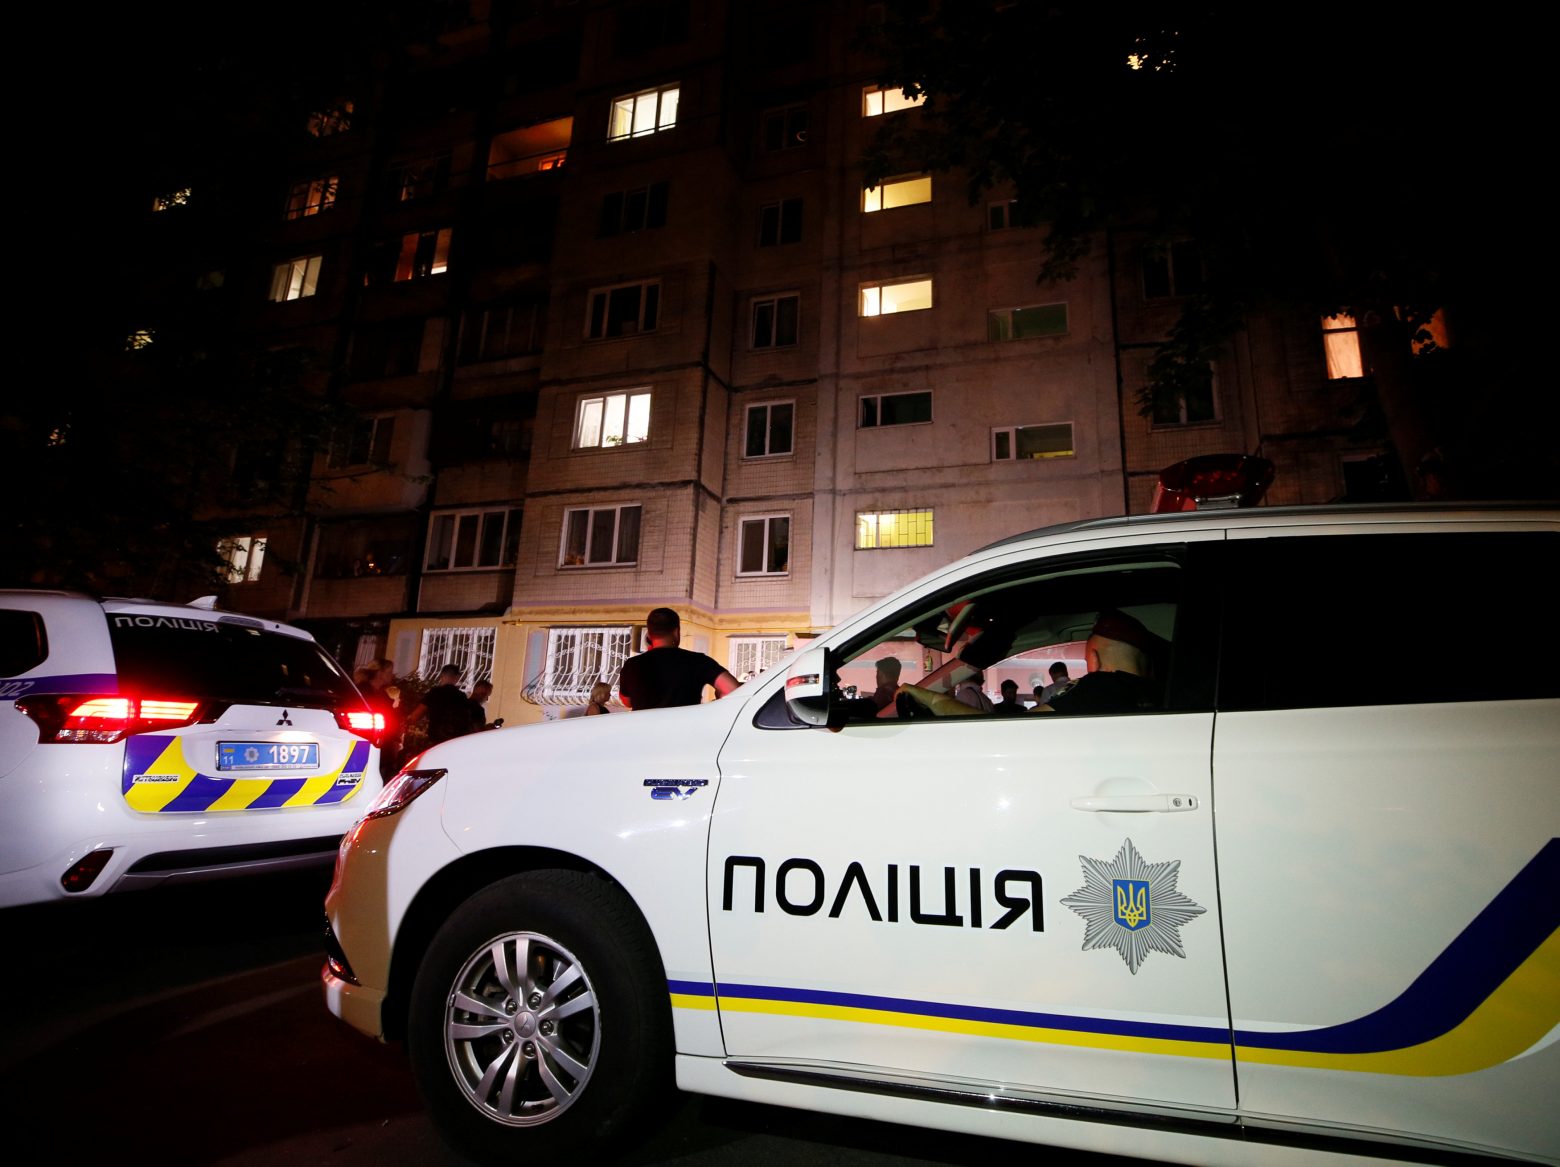 Ρωσία - Νεοναζί ετοίμαζε τρομοκρατική επίθεση στο Βλαδιβοστόκ - Τον συνέλαβαν πριν δράσει